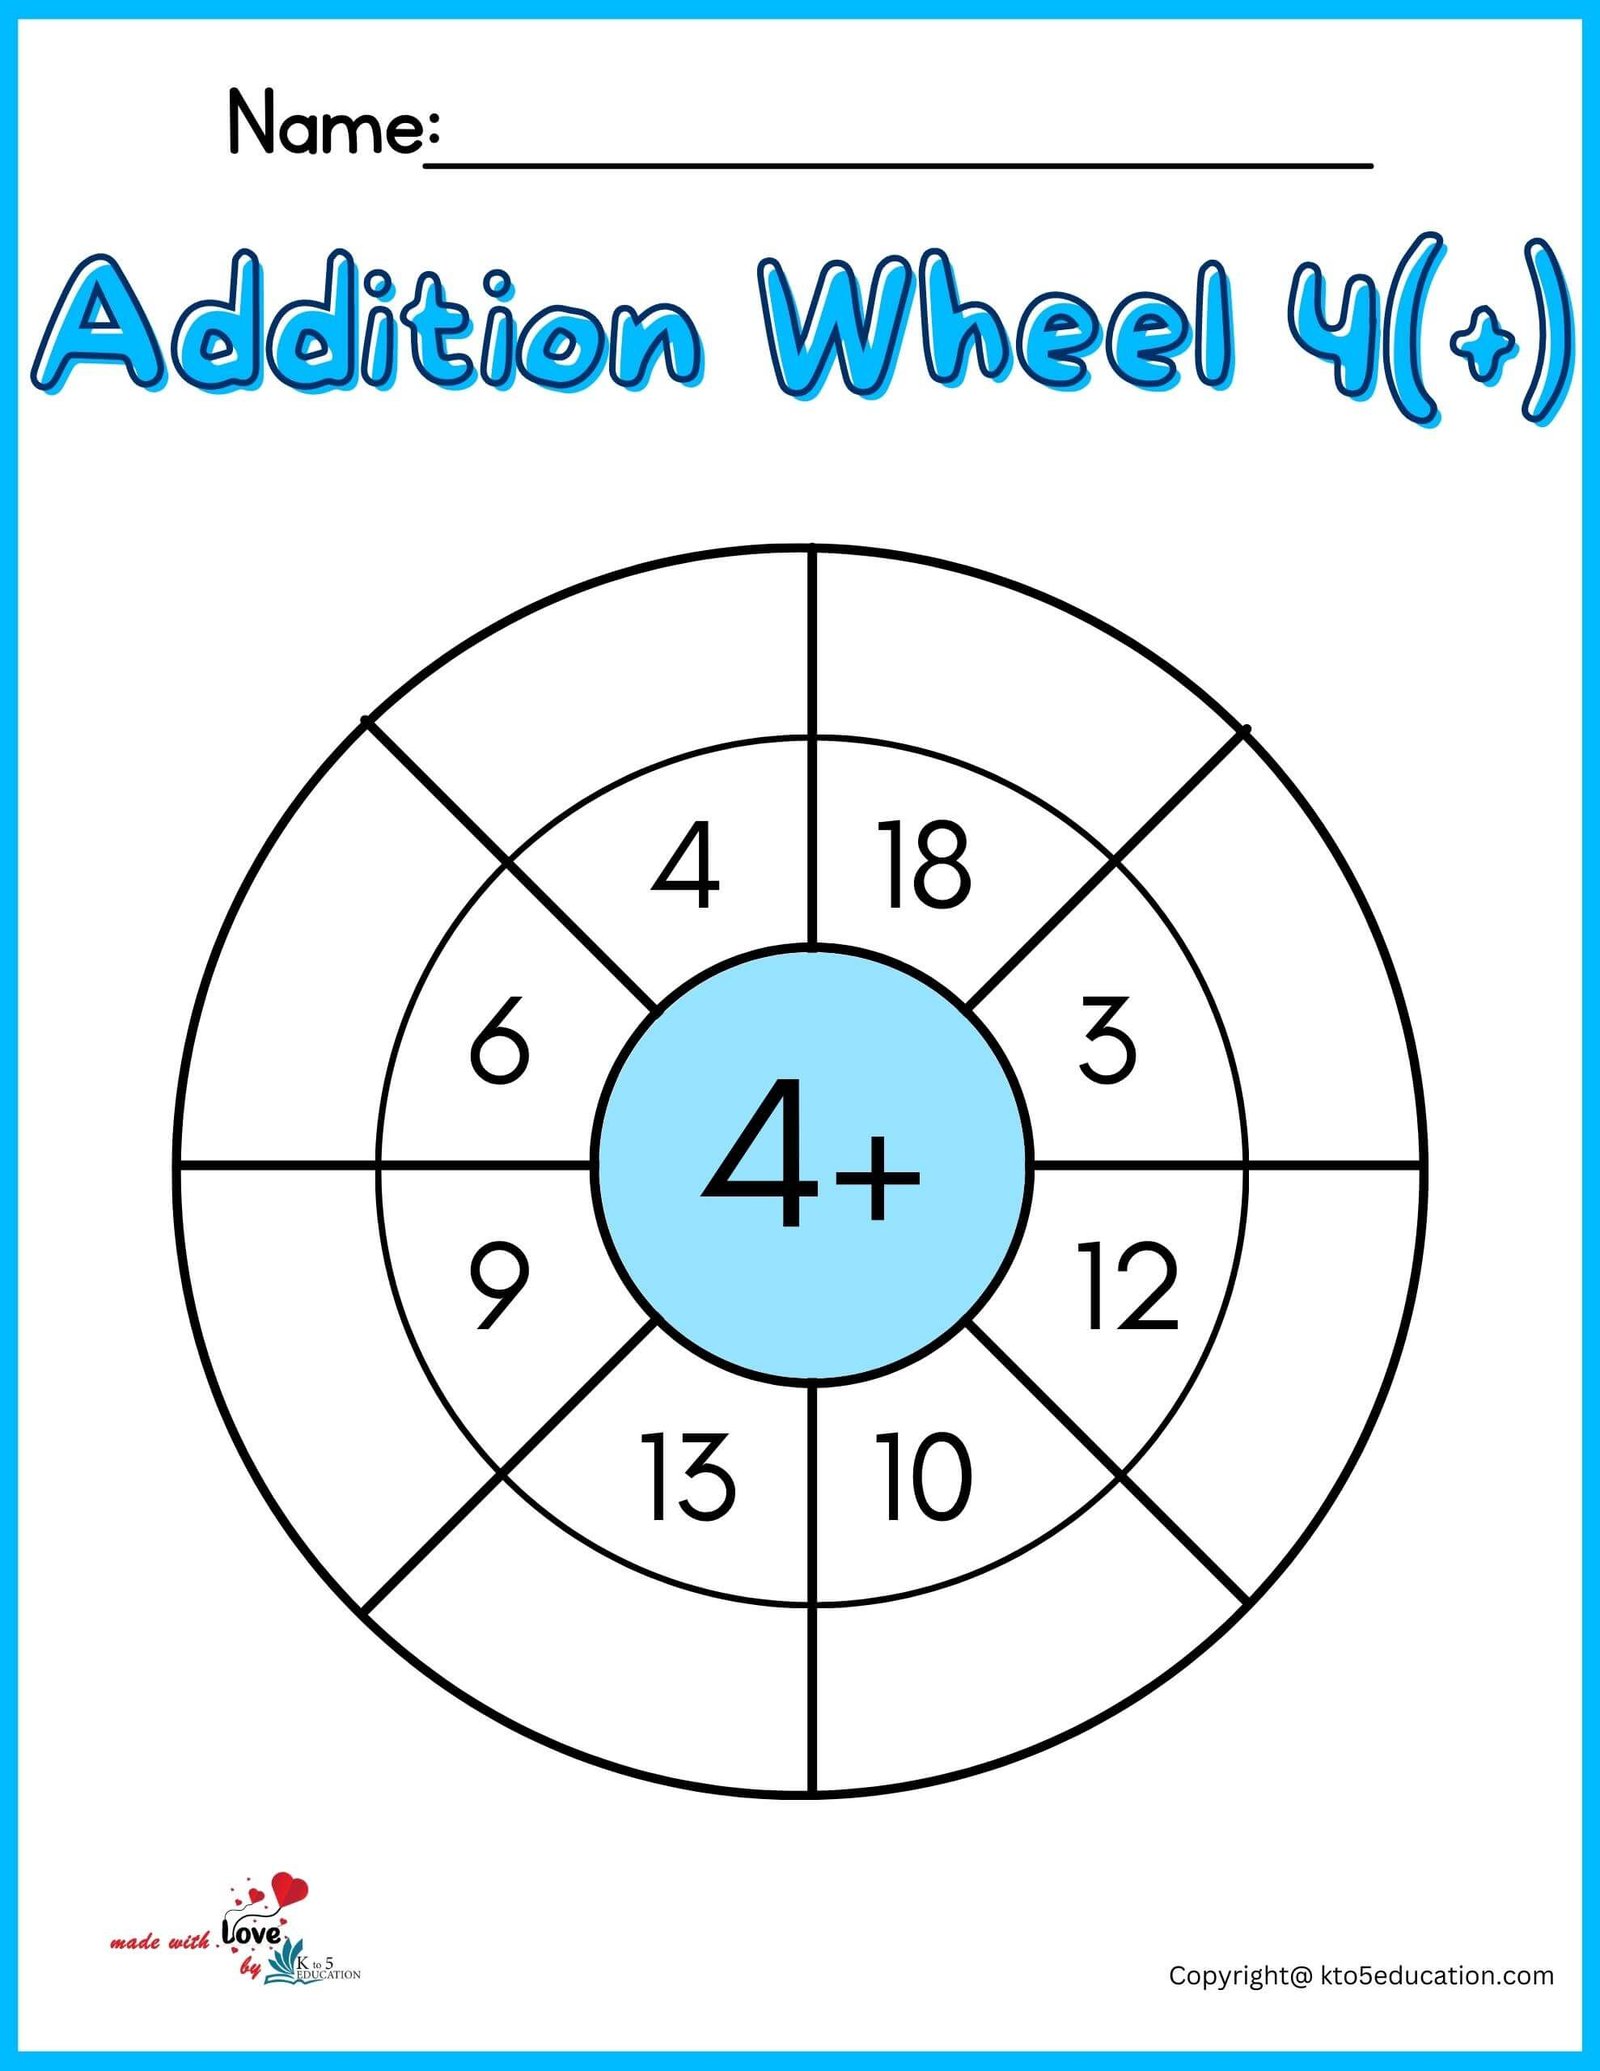 Addition Wheel Worksheets For Kids